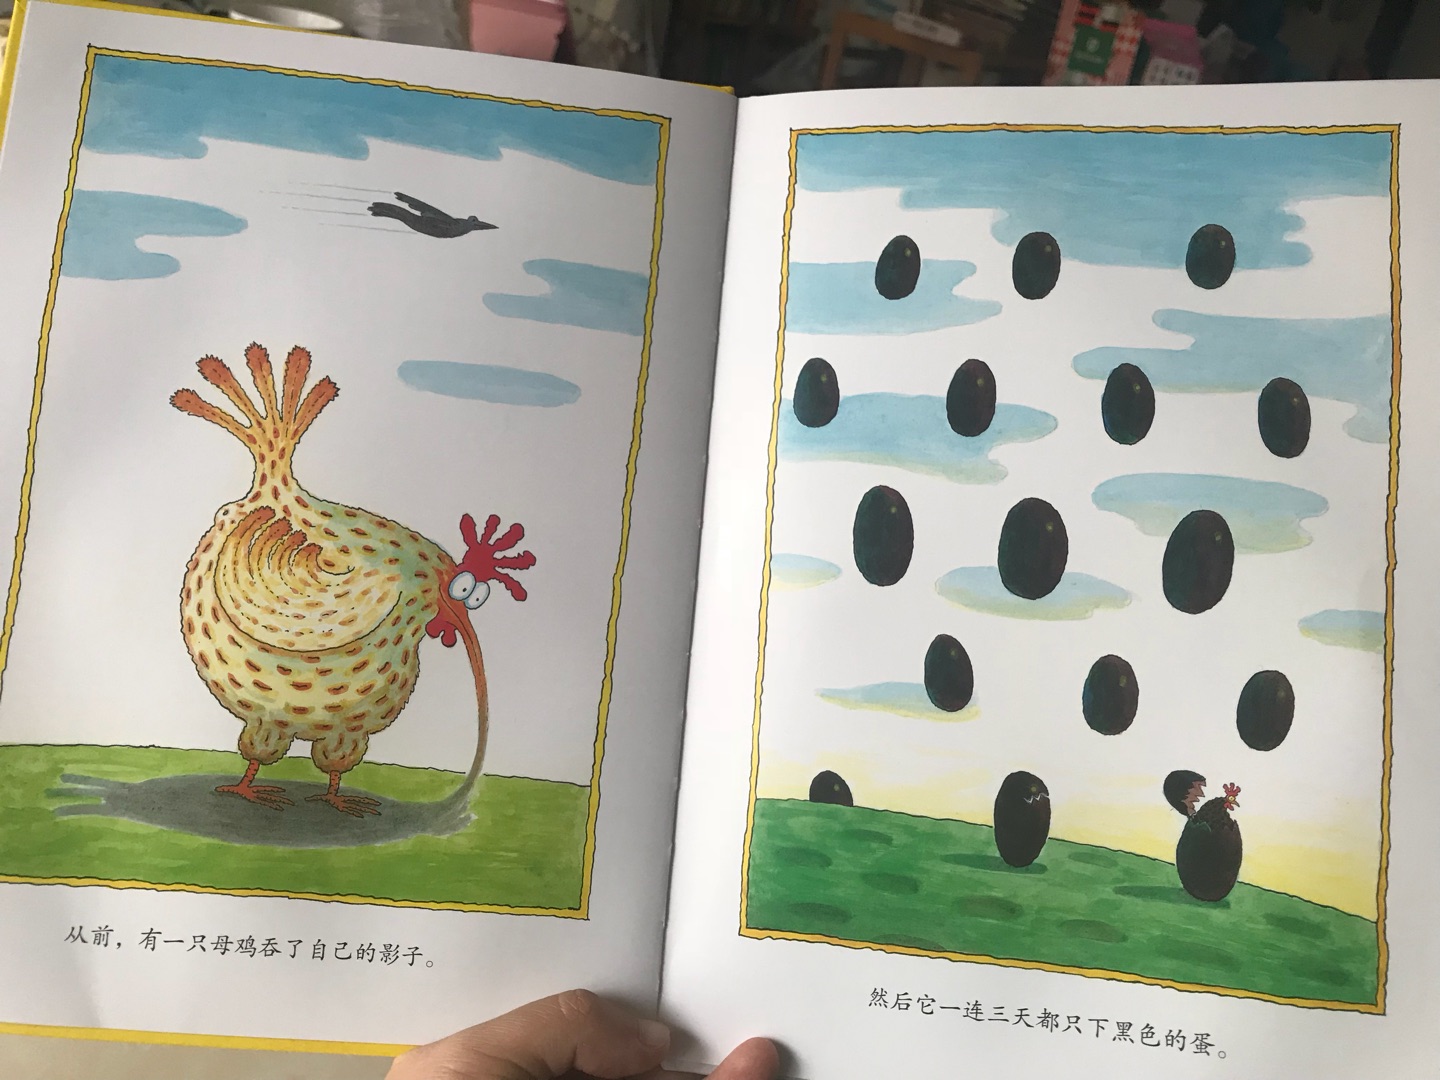 买了一系列的关于鸡的绘本孩子爱看。买了一系列的关于鸡的绘本孩子爱看。